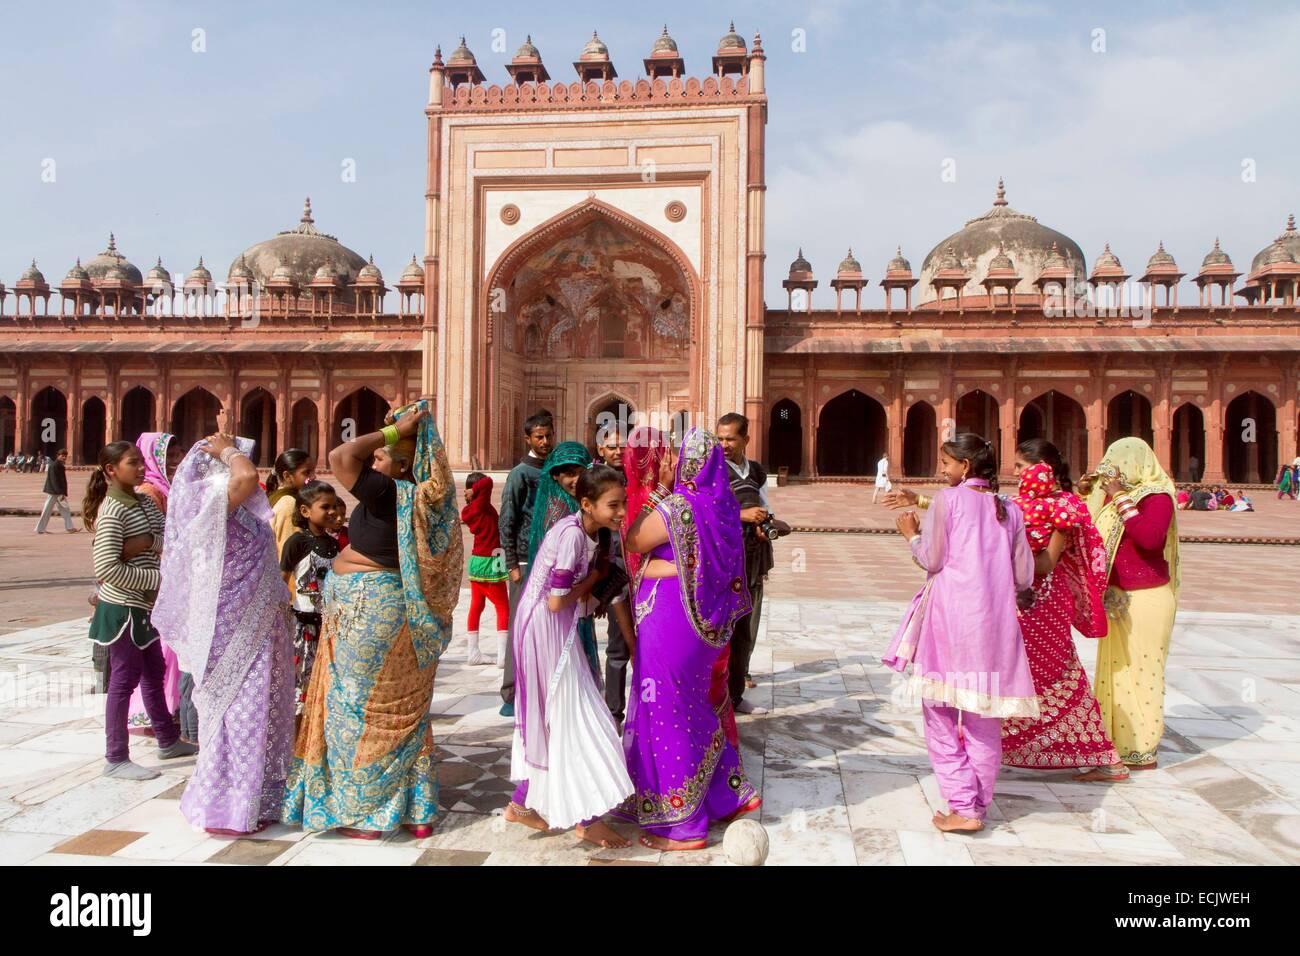 Indien, Uttar Pradesh state, Fatehpur Sikri, Jama Masjid Moschee, als Weltkulturerbe der UNESCO, indische Touristen aufgeführt Stockfoto